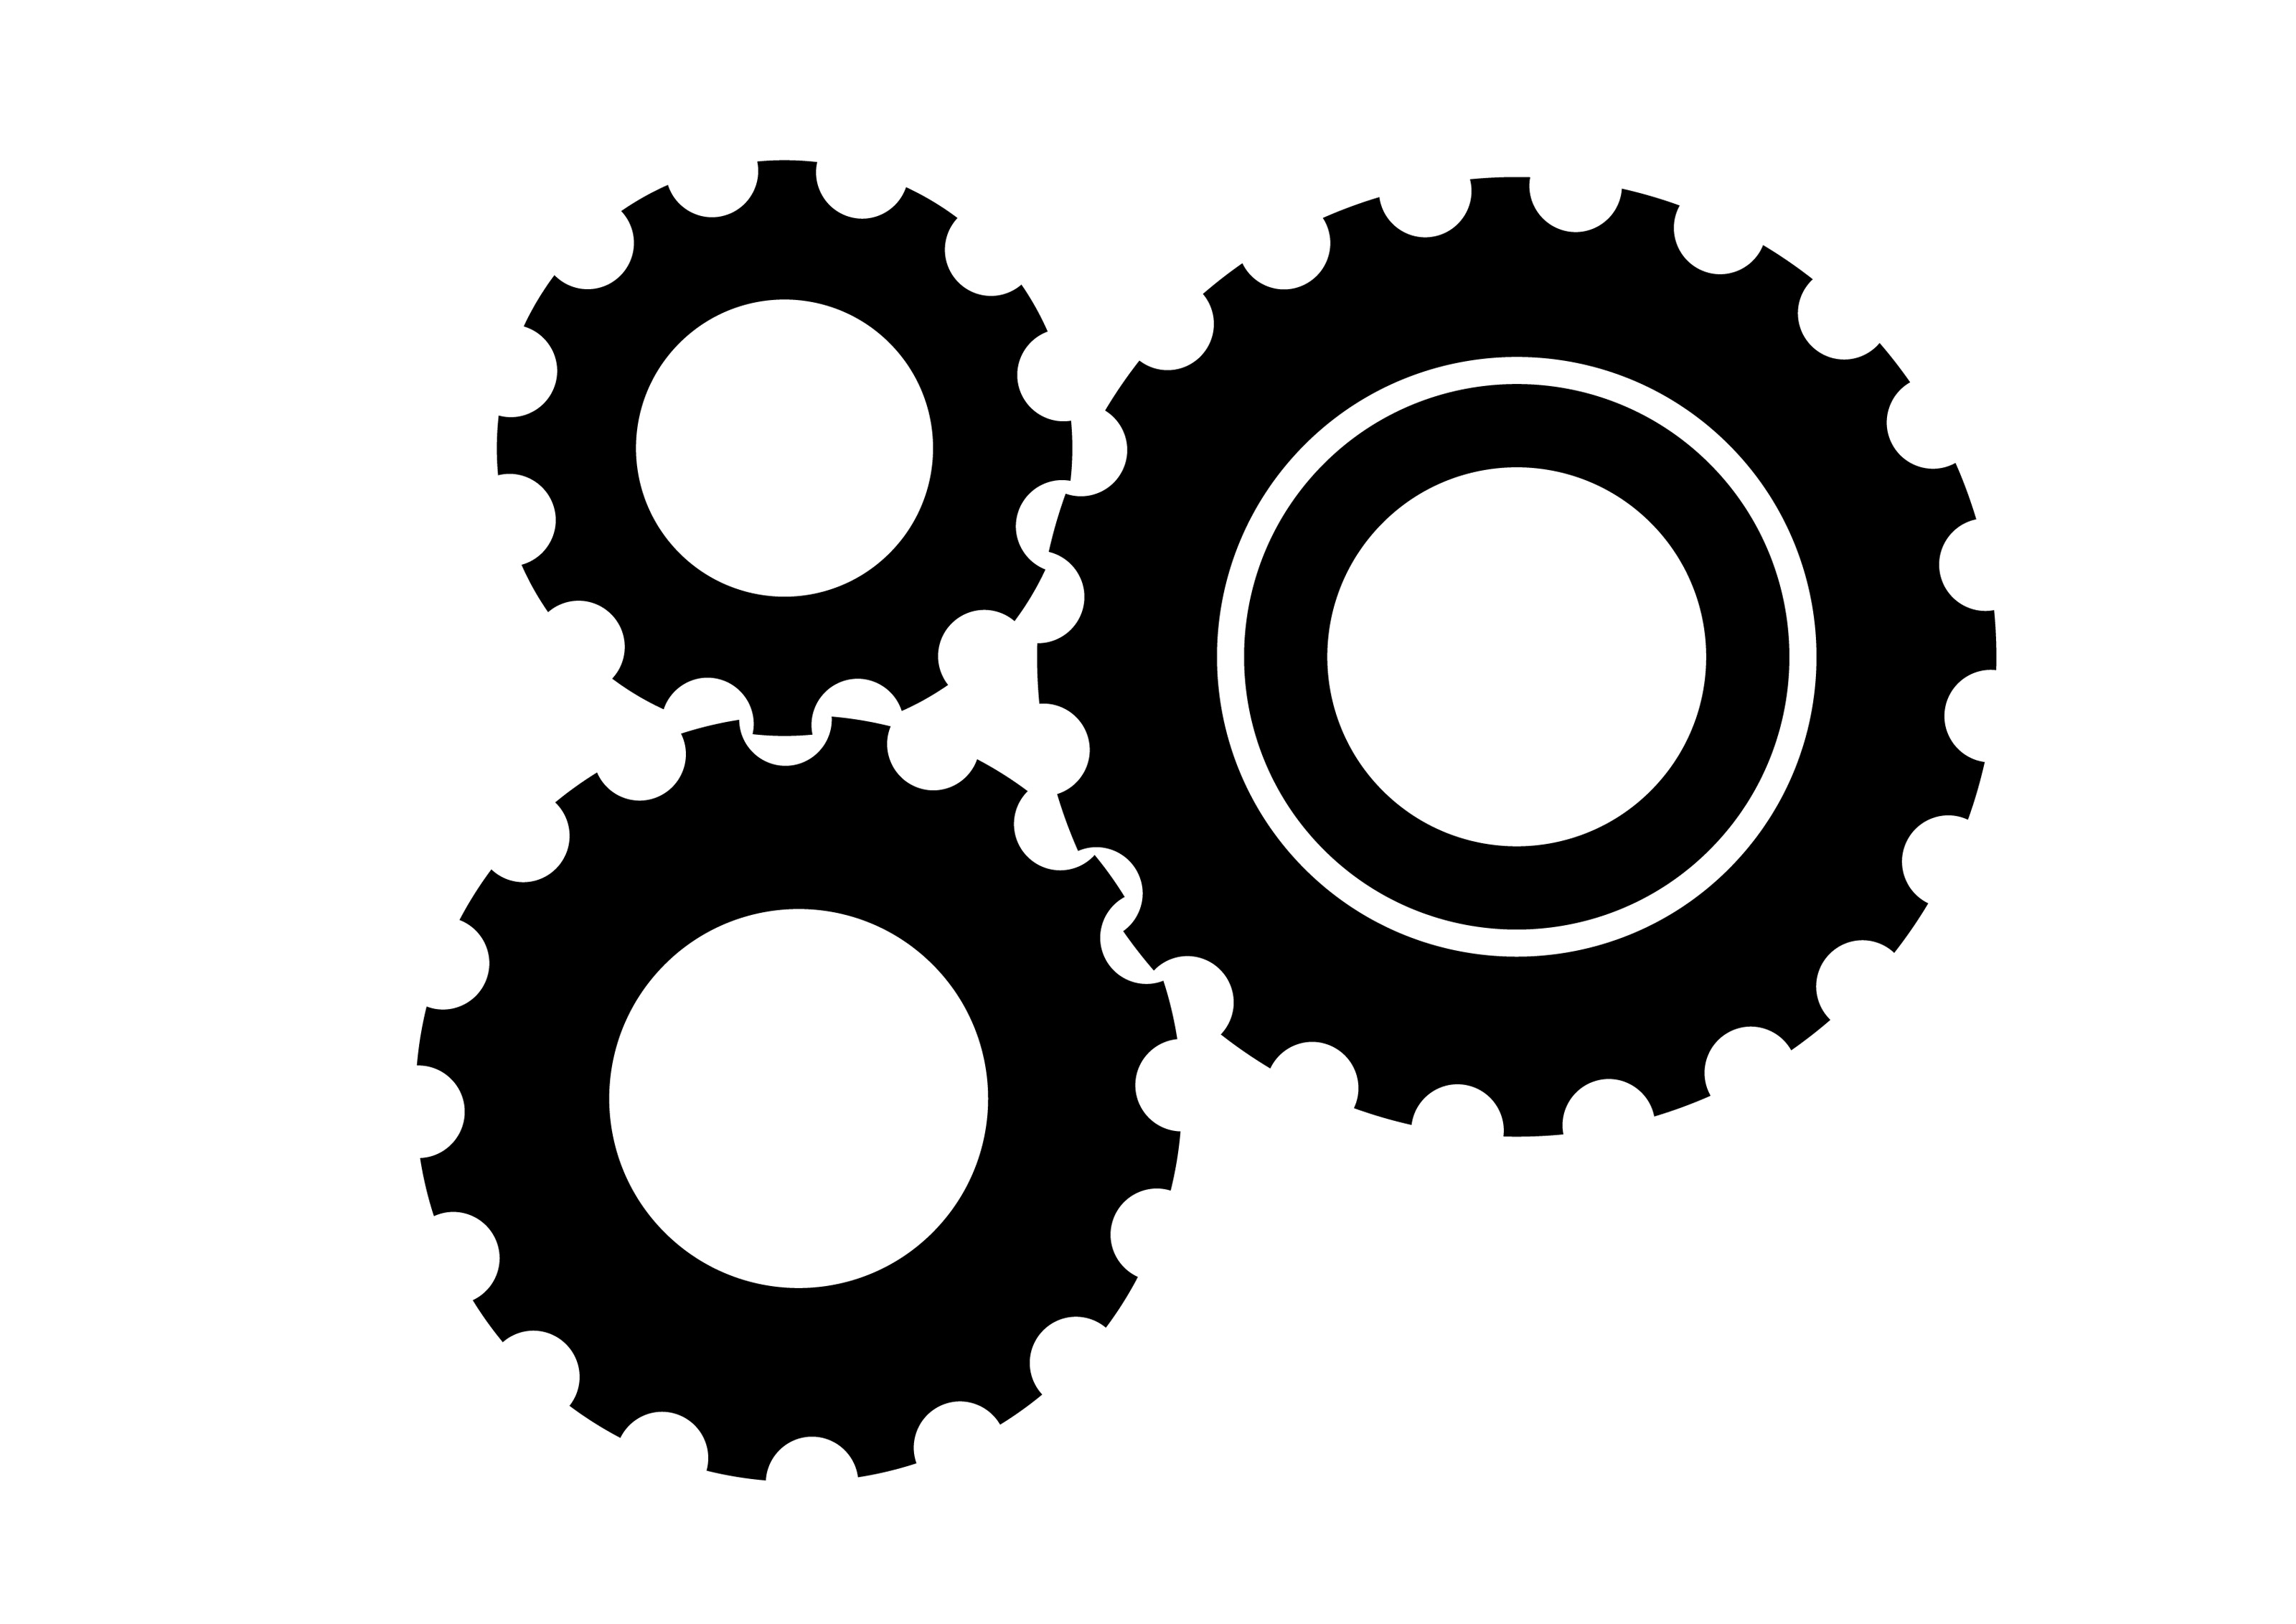 Download 3-black-gear-wheels-free-vector-icon